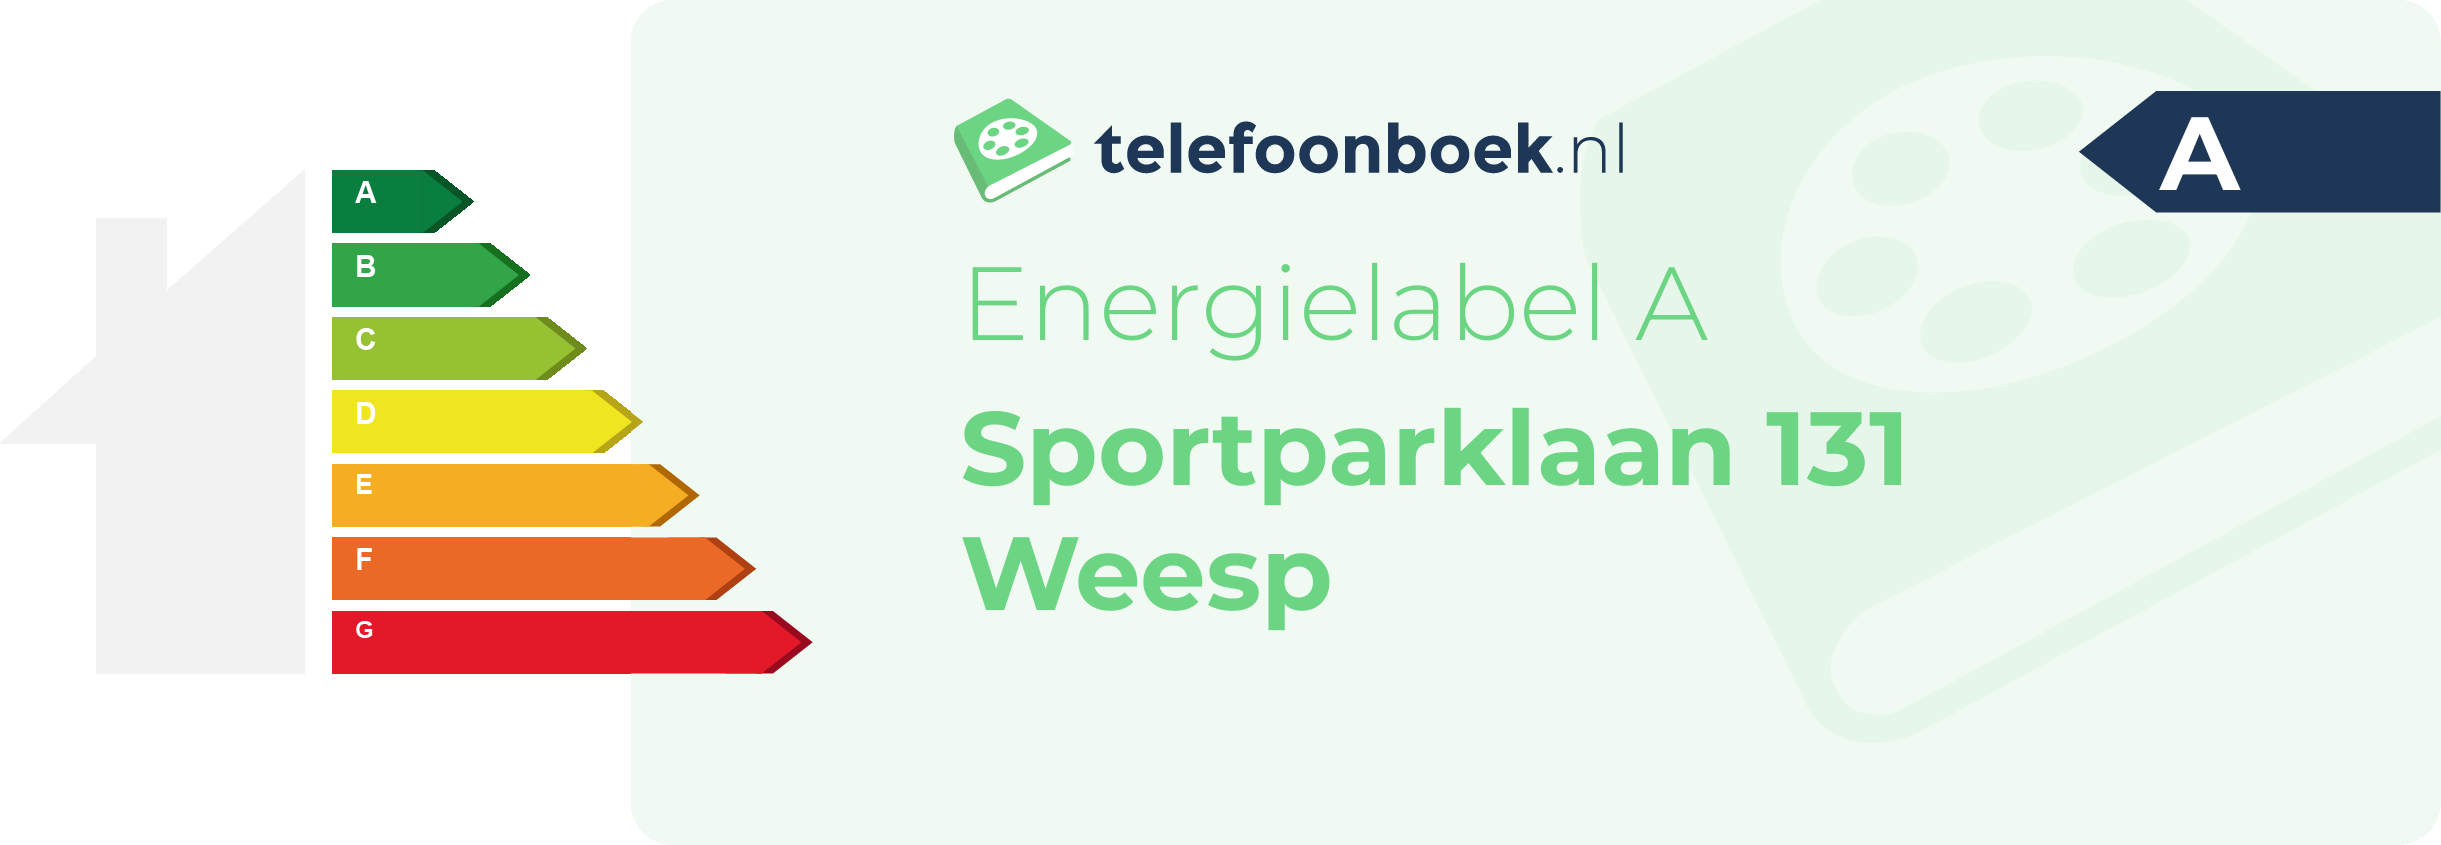 Energielabel Sportparklaan 131 Weesp